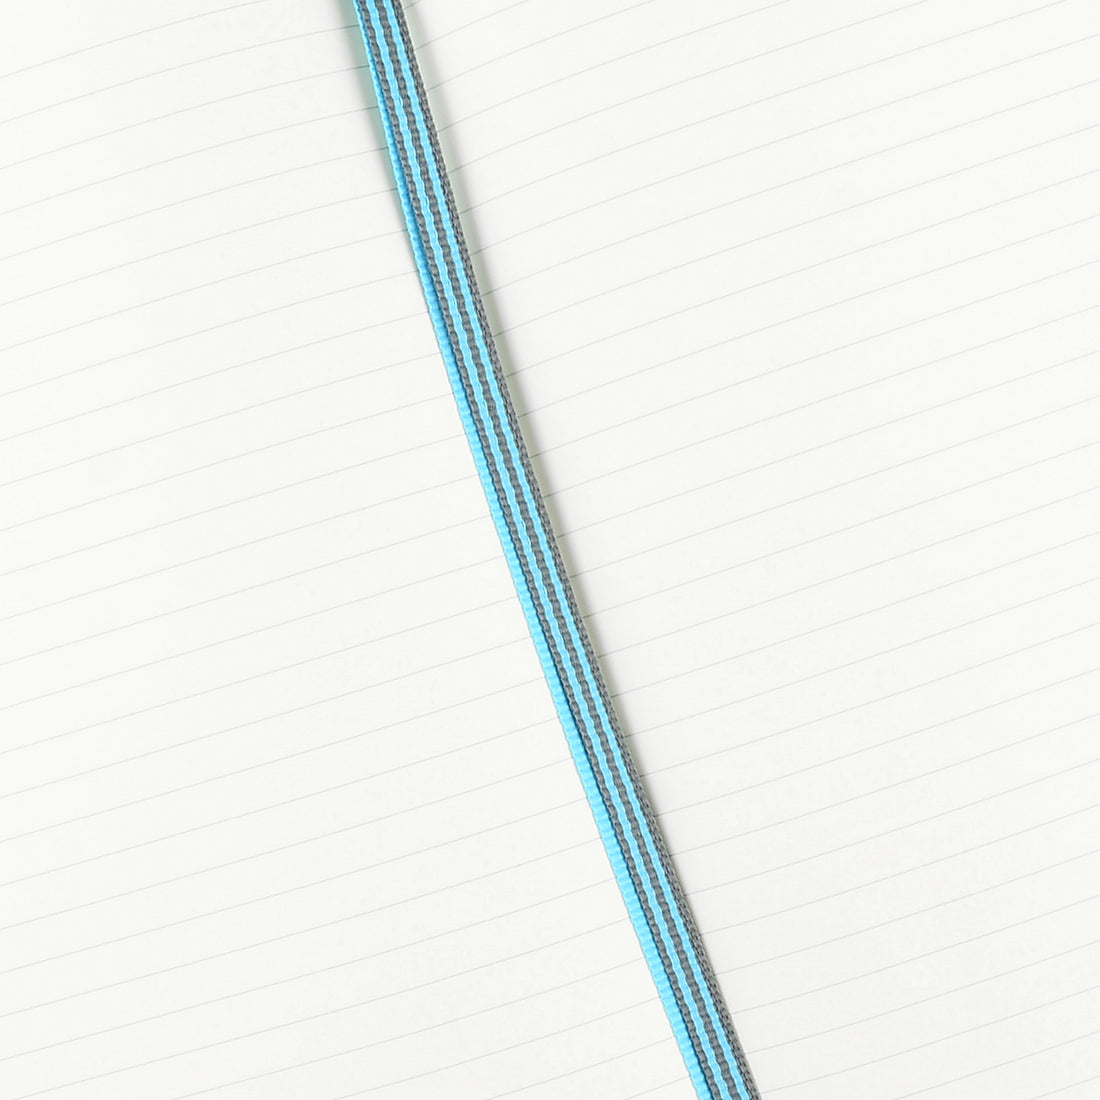 Leuchtturm 1917 Leuchtturm Notebook Ice Blue A5 | Ruled or Dot Grid 